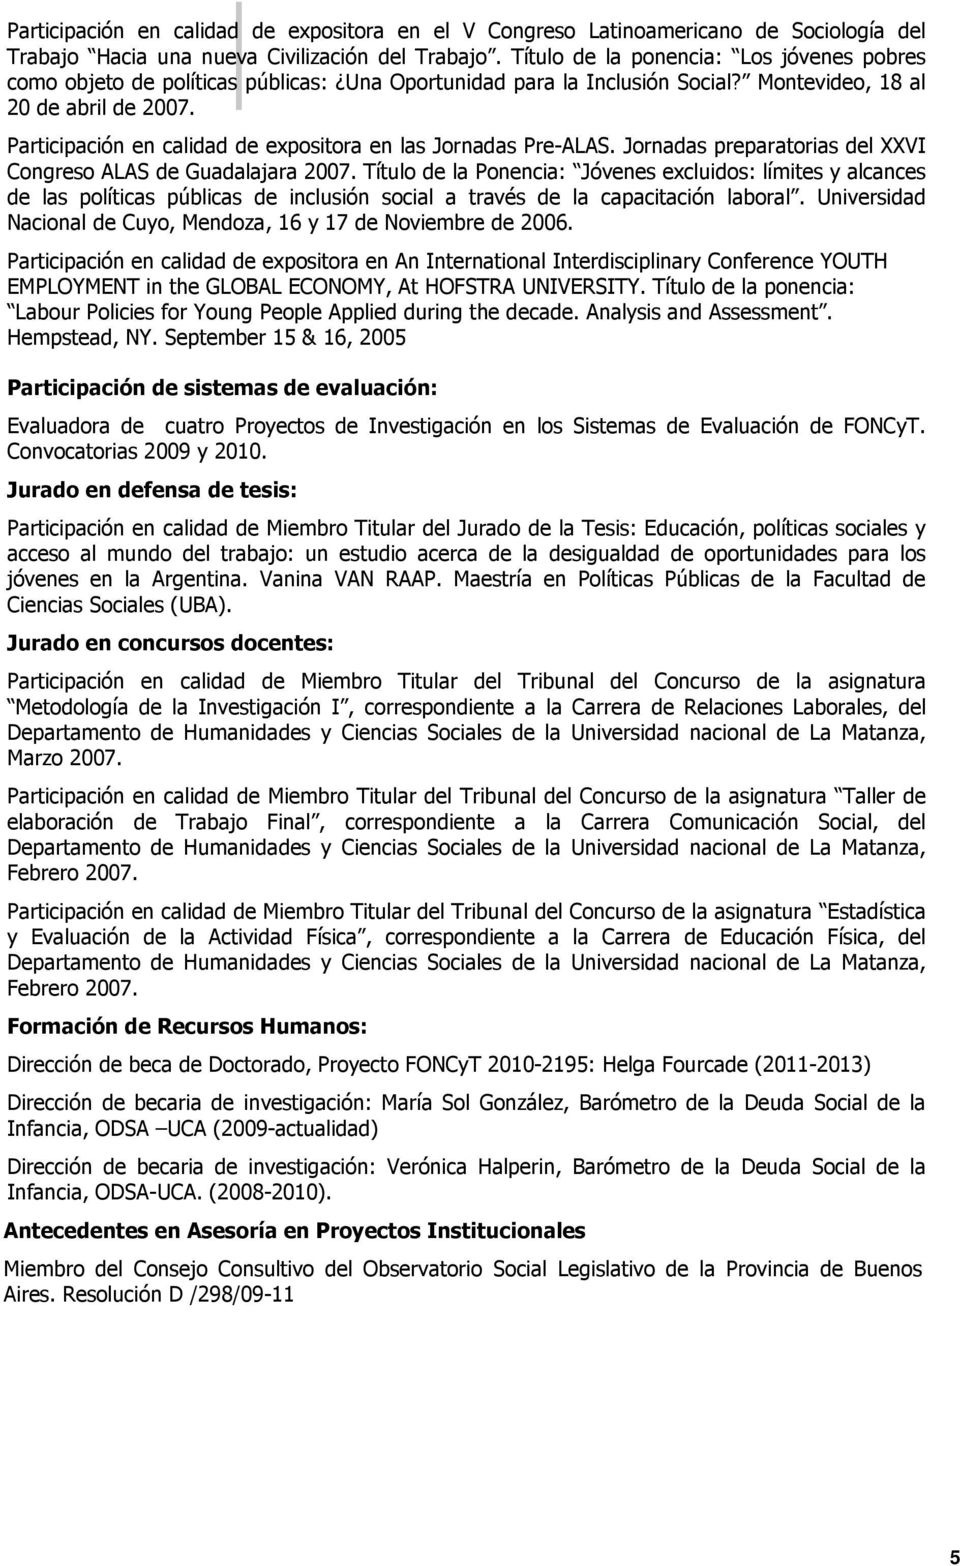 Participación en calidad de expositora en las Jornadas Pre-ALAS. Jornadas preparatorias del XXVI Congreso ALAS de Guadalajara 2007.